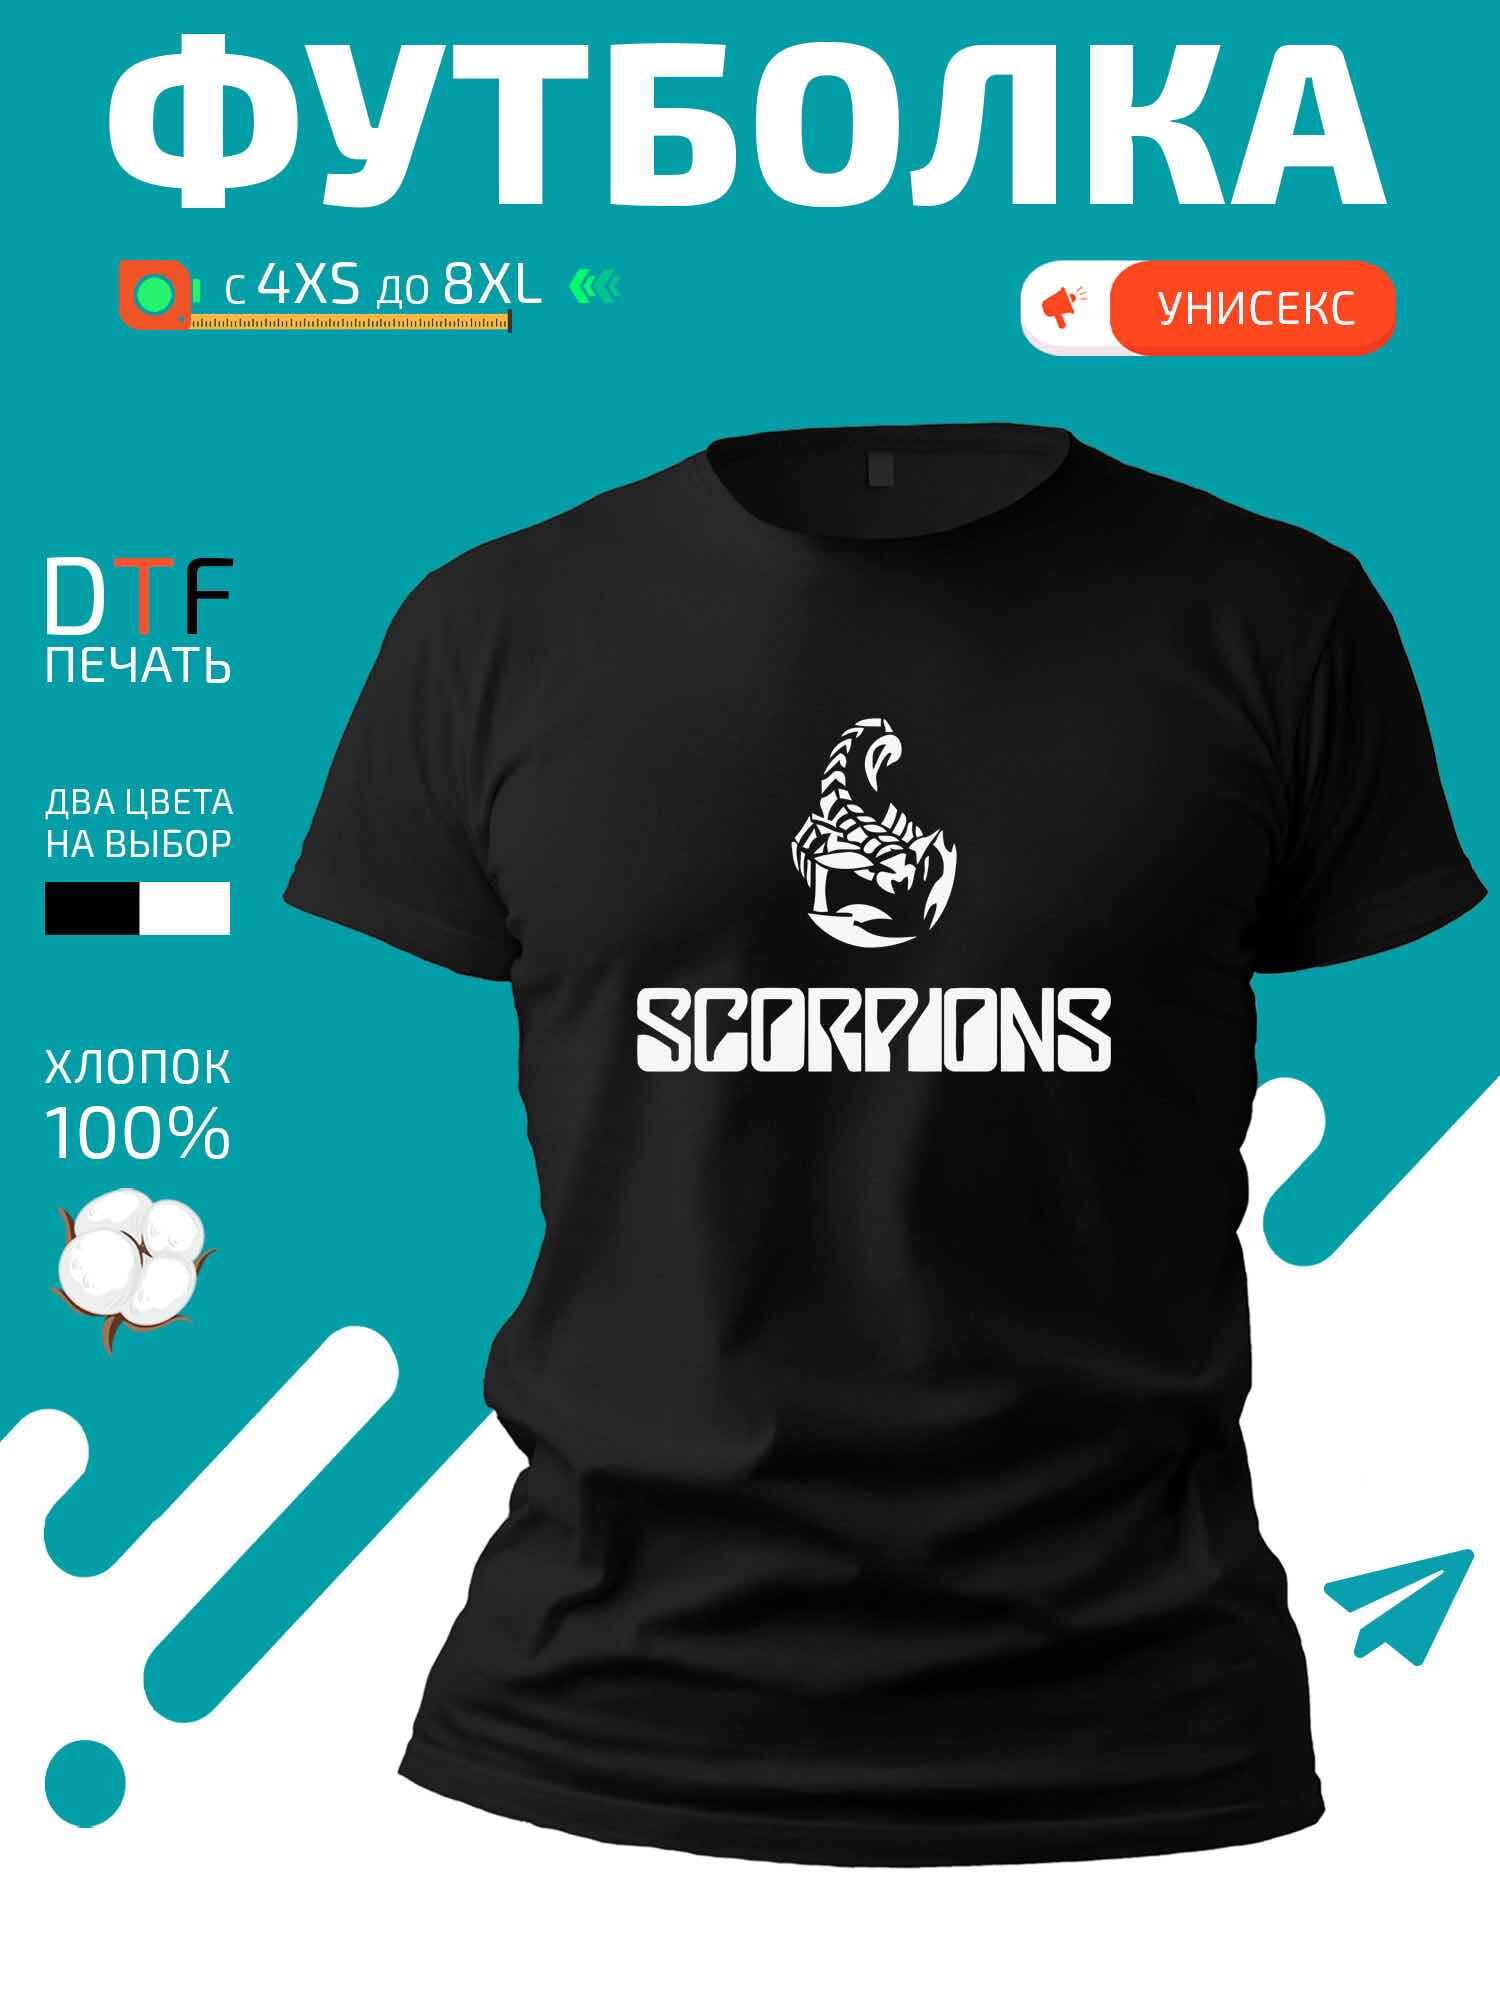 Футболка логотип группы Scorpions